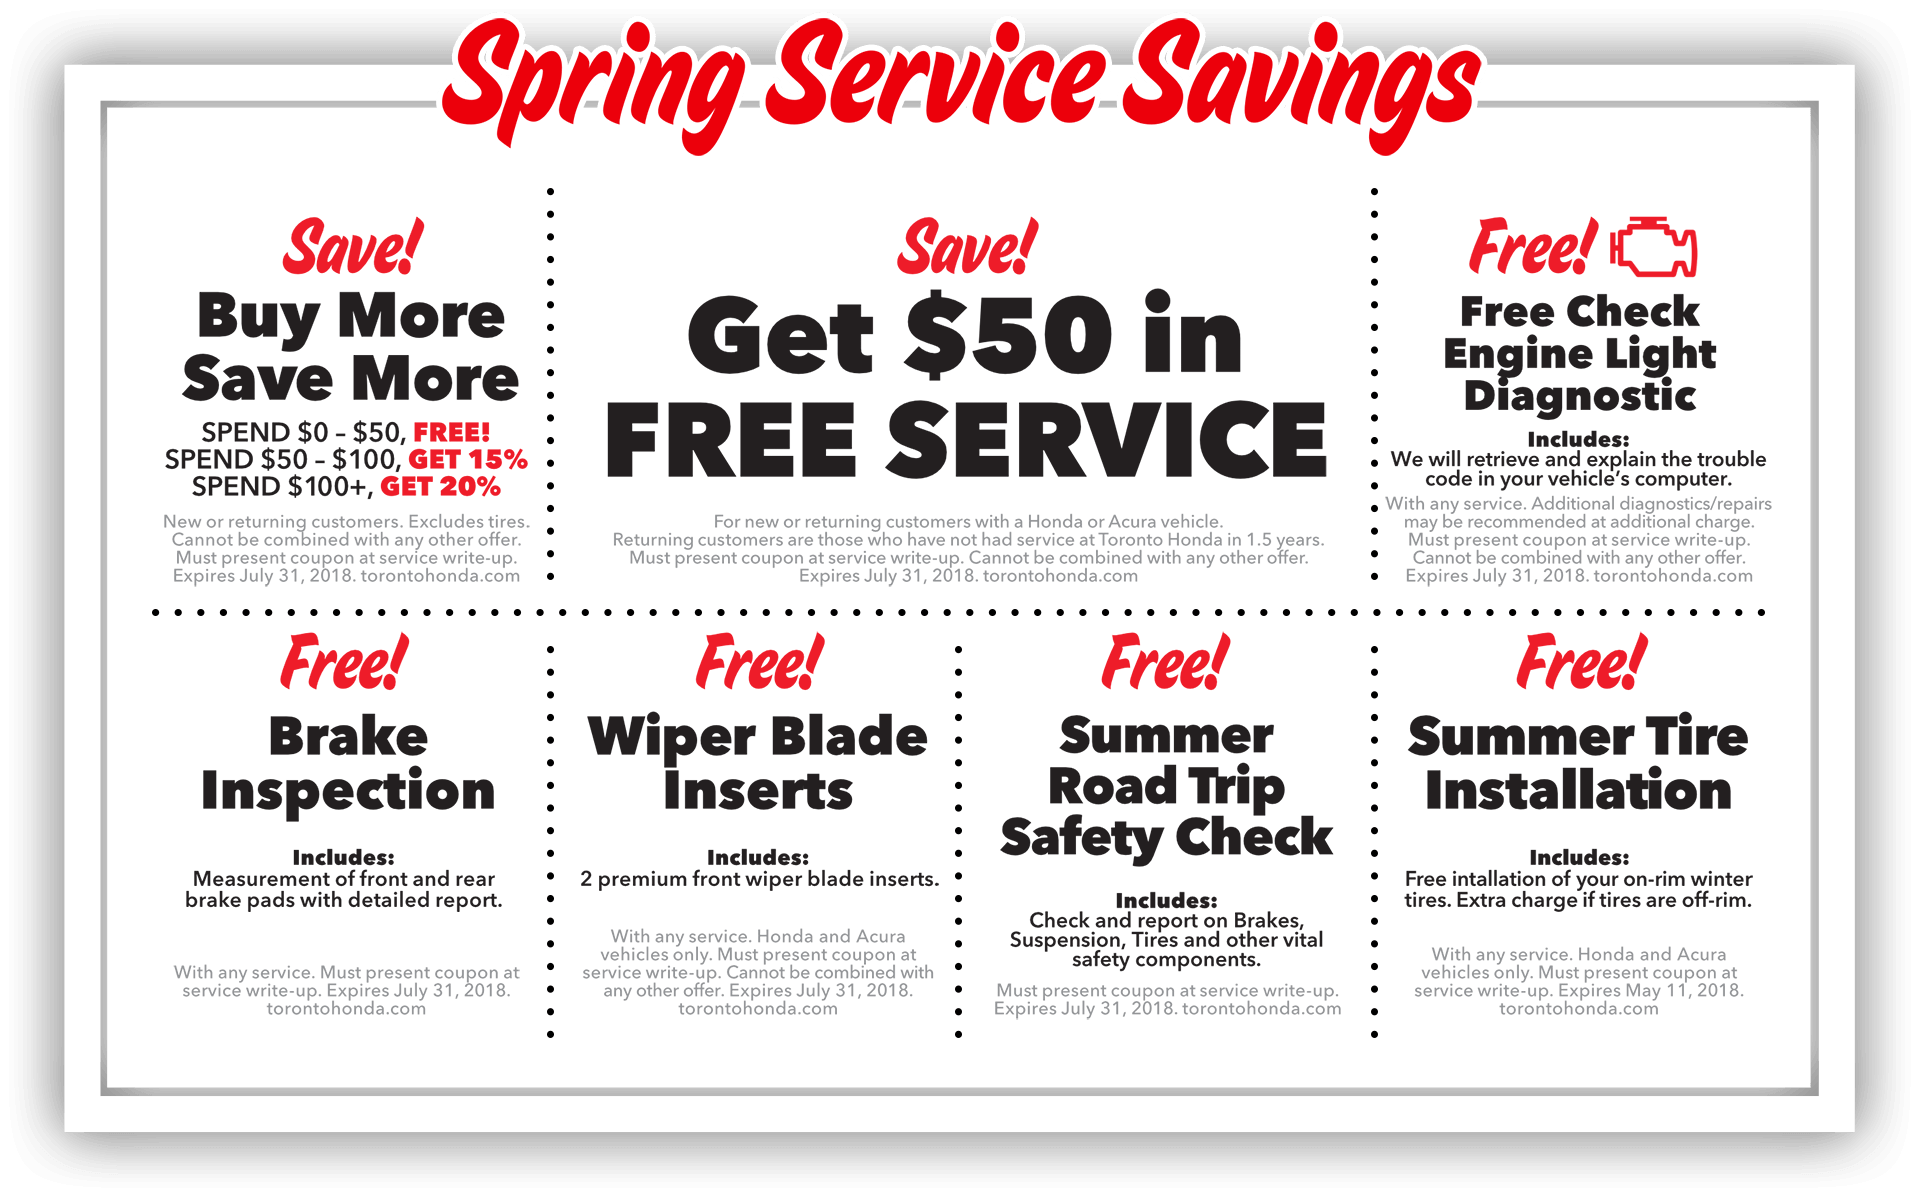 SPRING Service Savings!